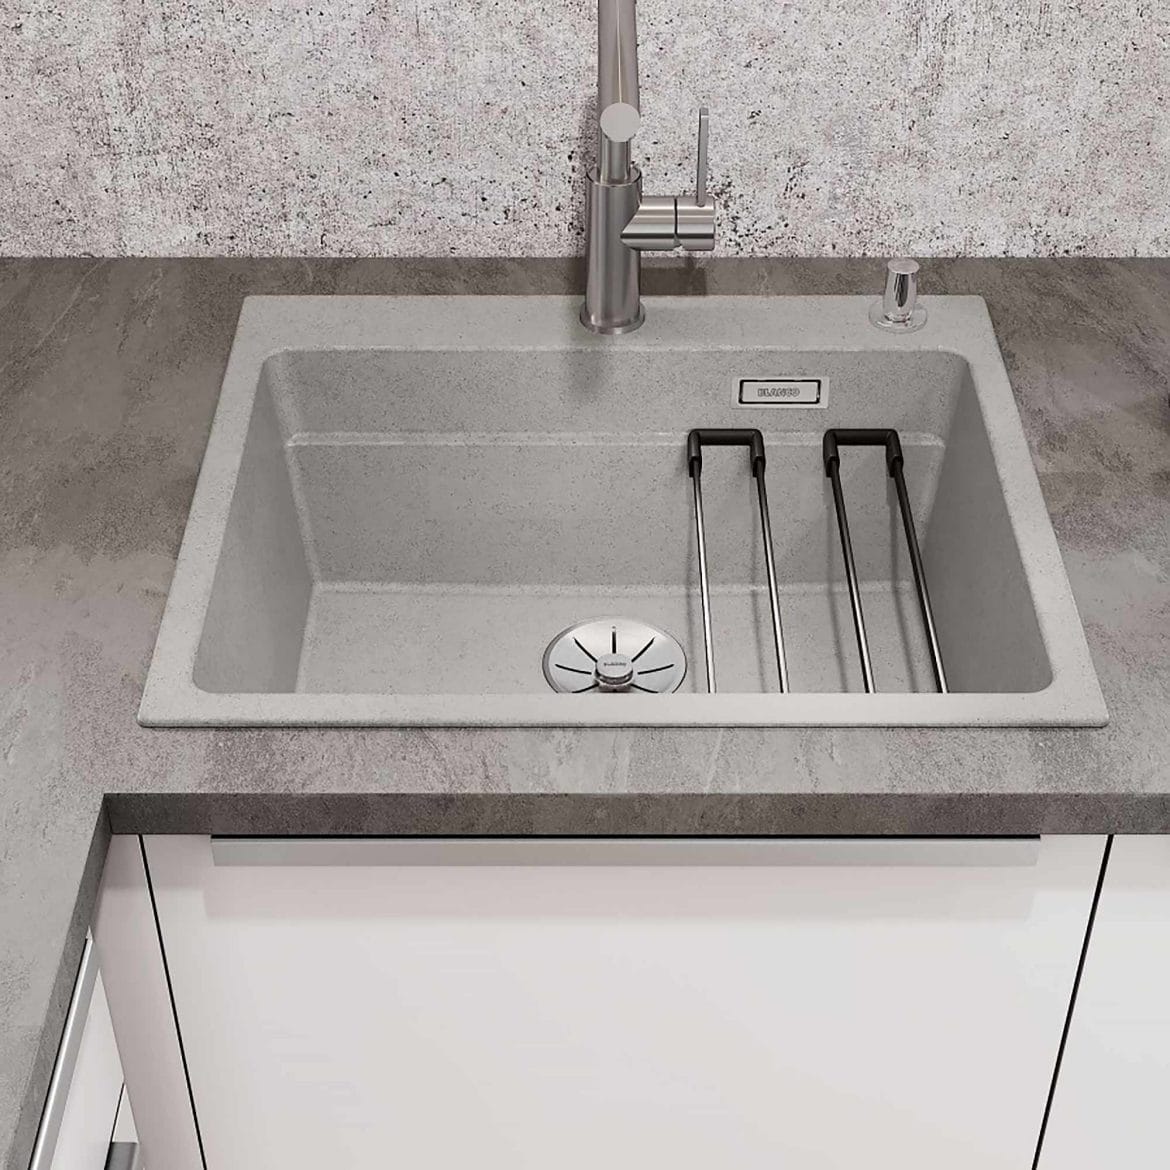 Blanco kitchen sink granite